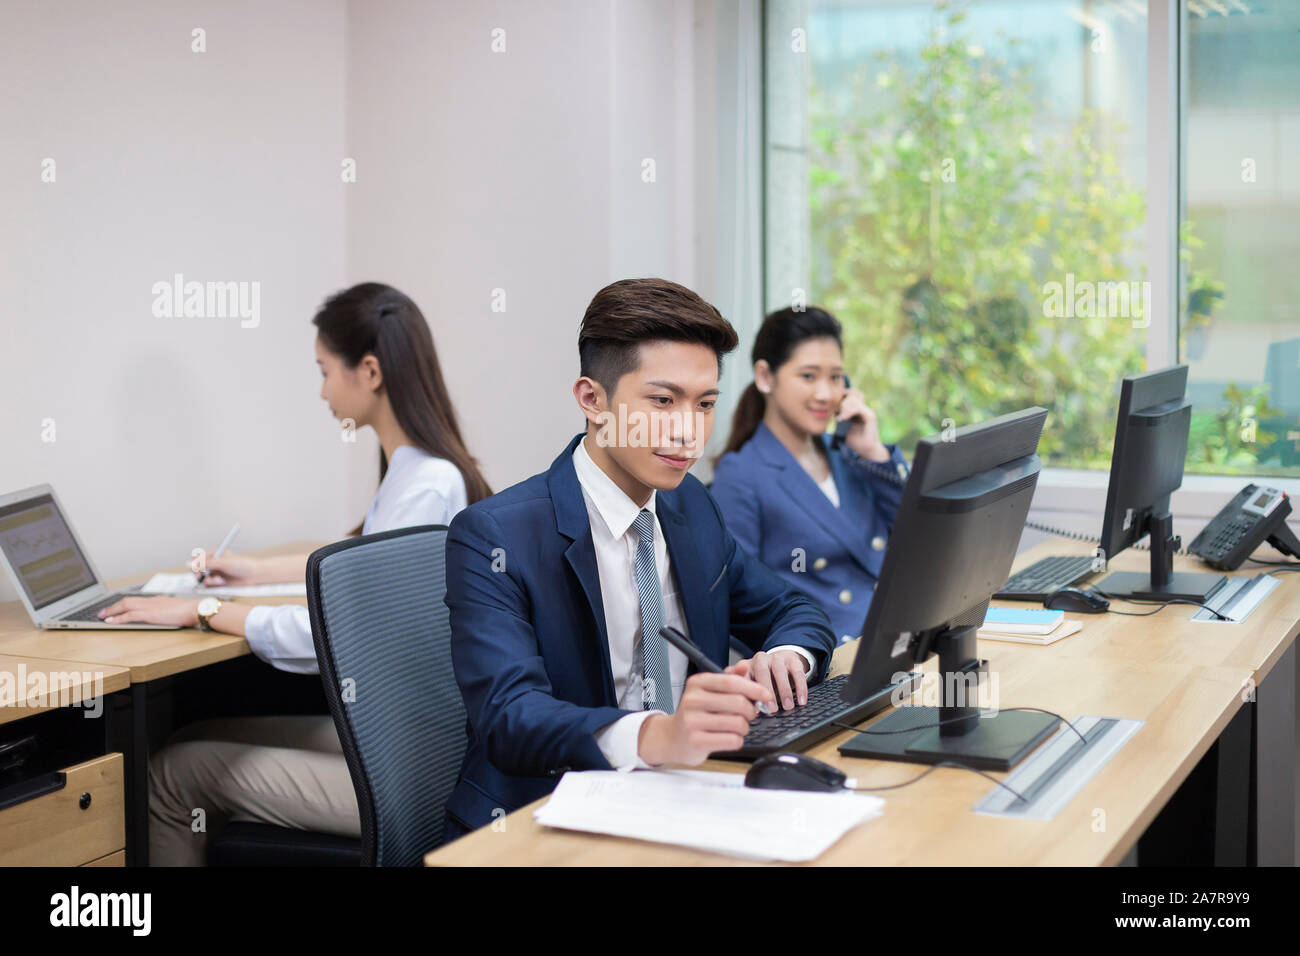 tres jóvenes hombres y mujeres de negocios que trabajan en una oficina con uno que utiliza la computadora, otro que utiliza el teléfono y otro que utiliza la computadora portátil Foto de stock